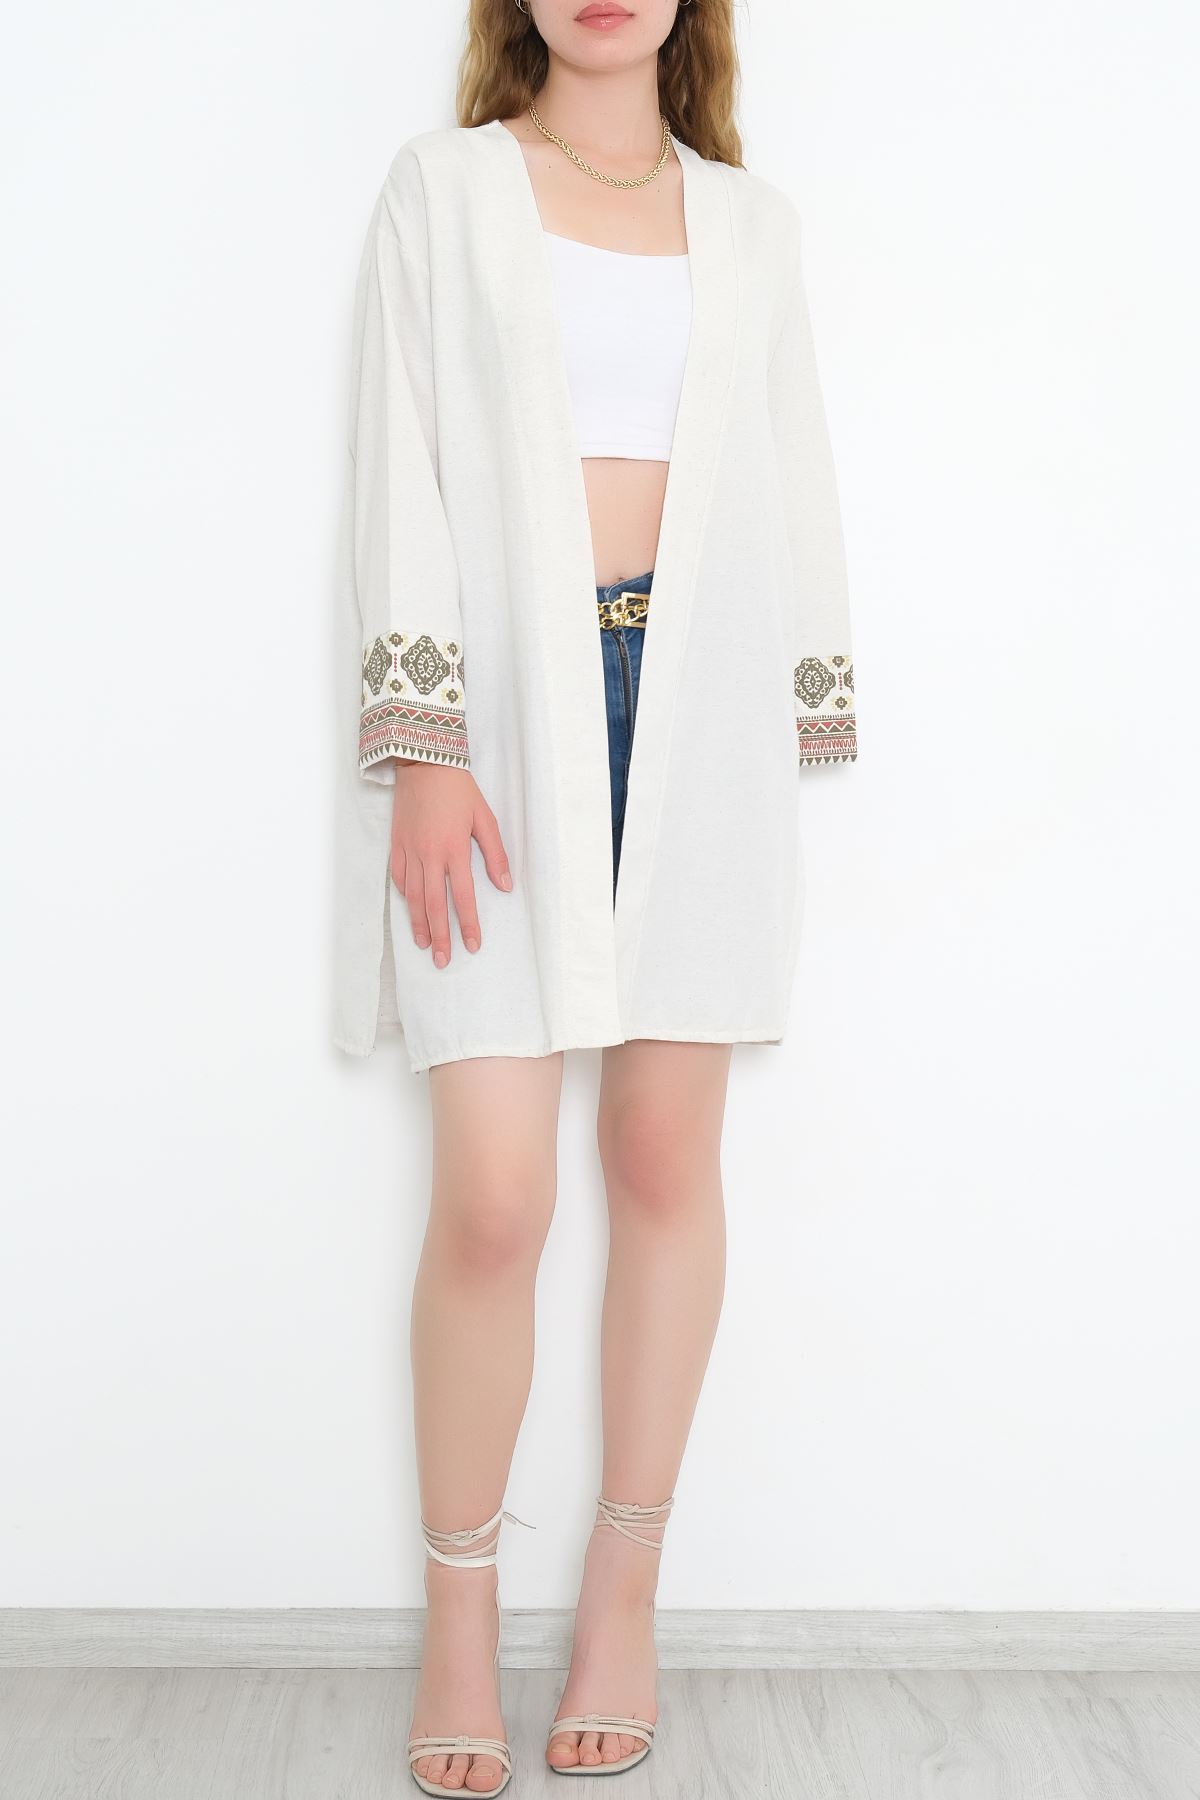 Kol Baskılı Kimono Beyaz - 3501.105.